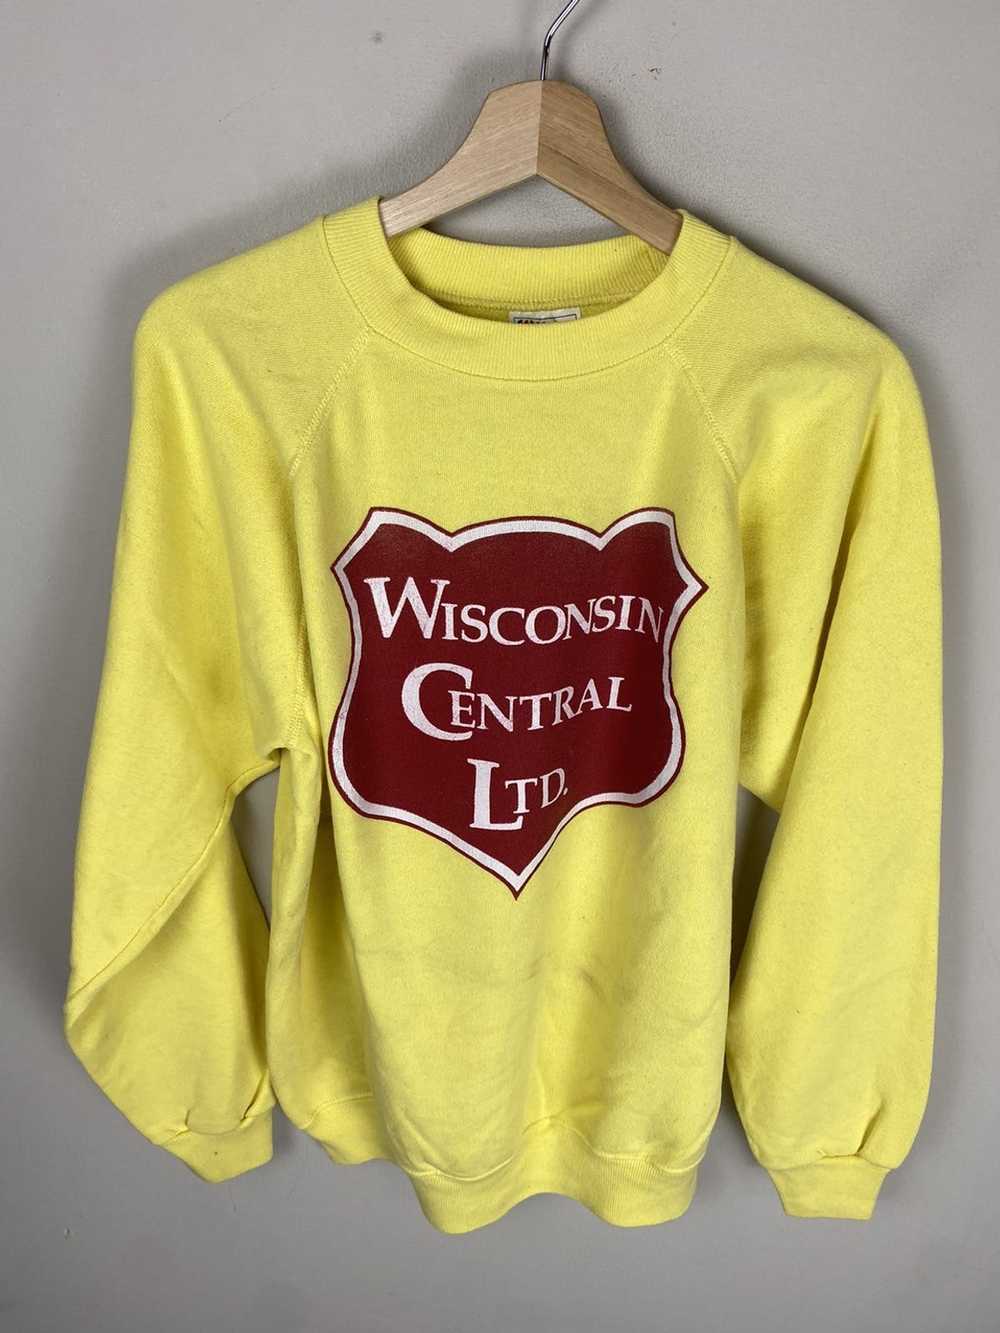 Vintage Vintage Wisconsin Central Ltd. Crewneck - image 1